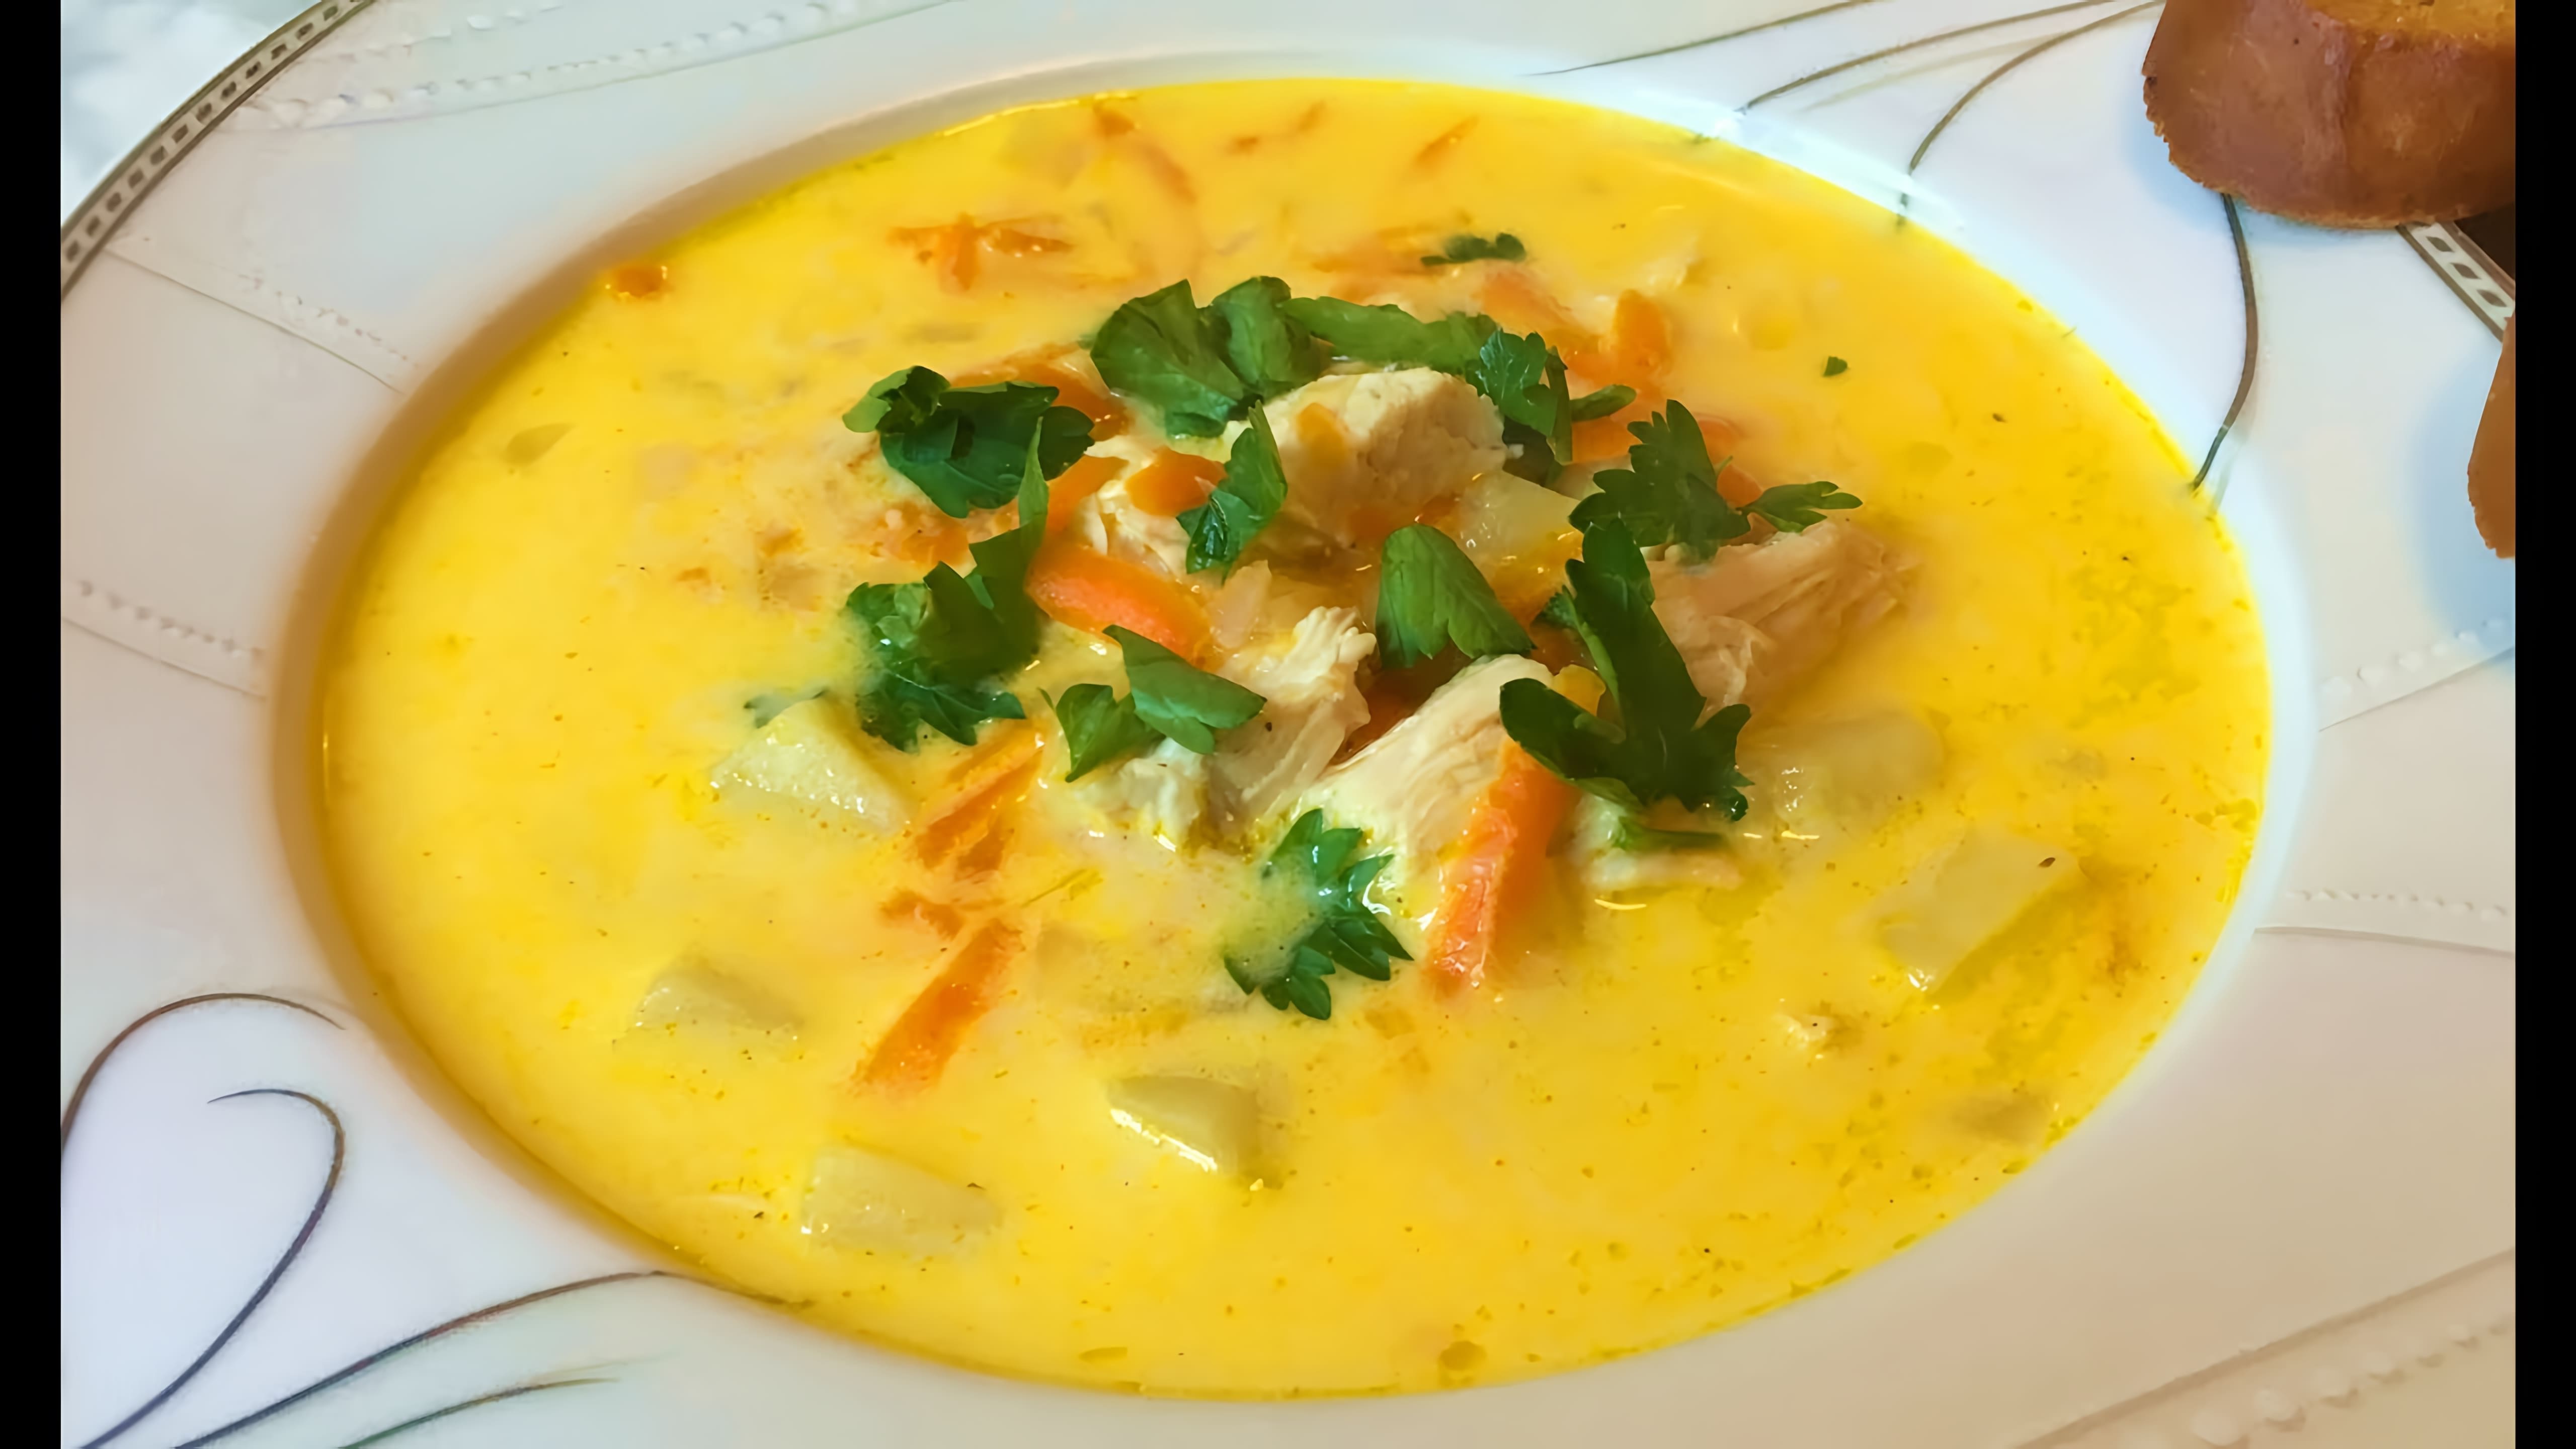 В этом видео демонстрируется процесс приготовления сырного супа с курицей и гренками